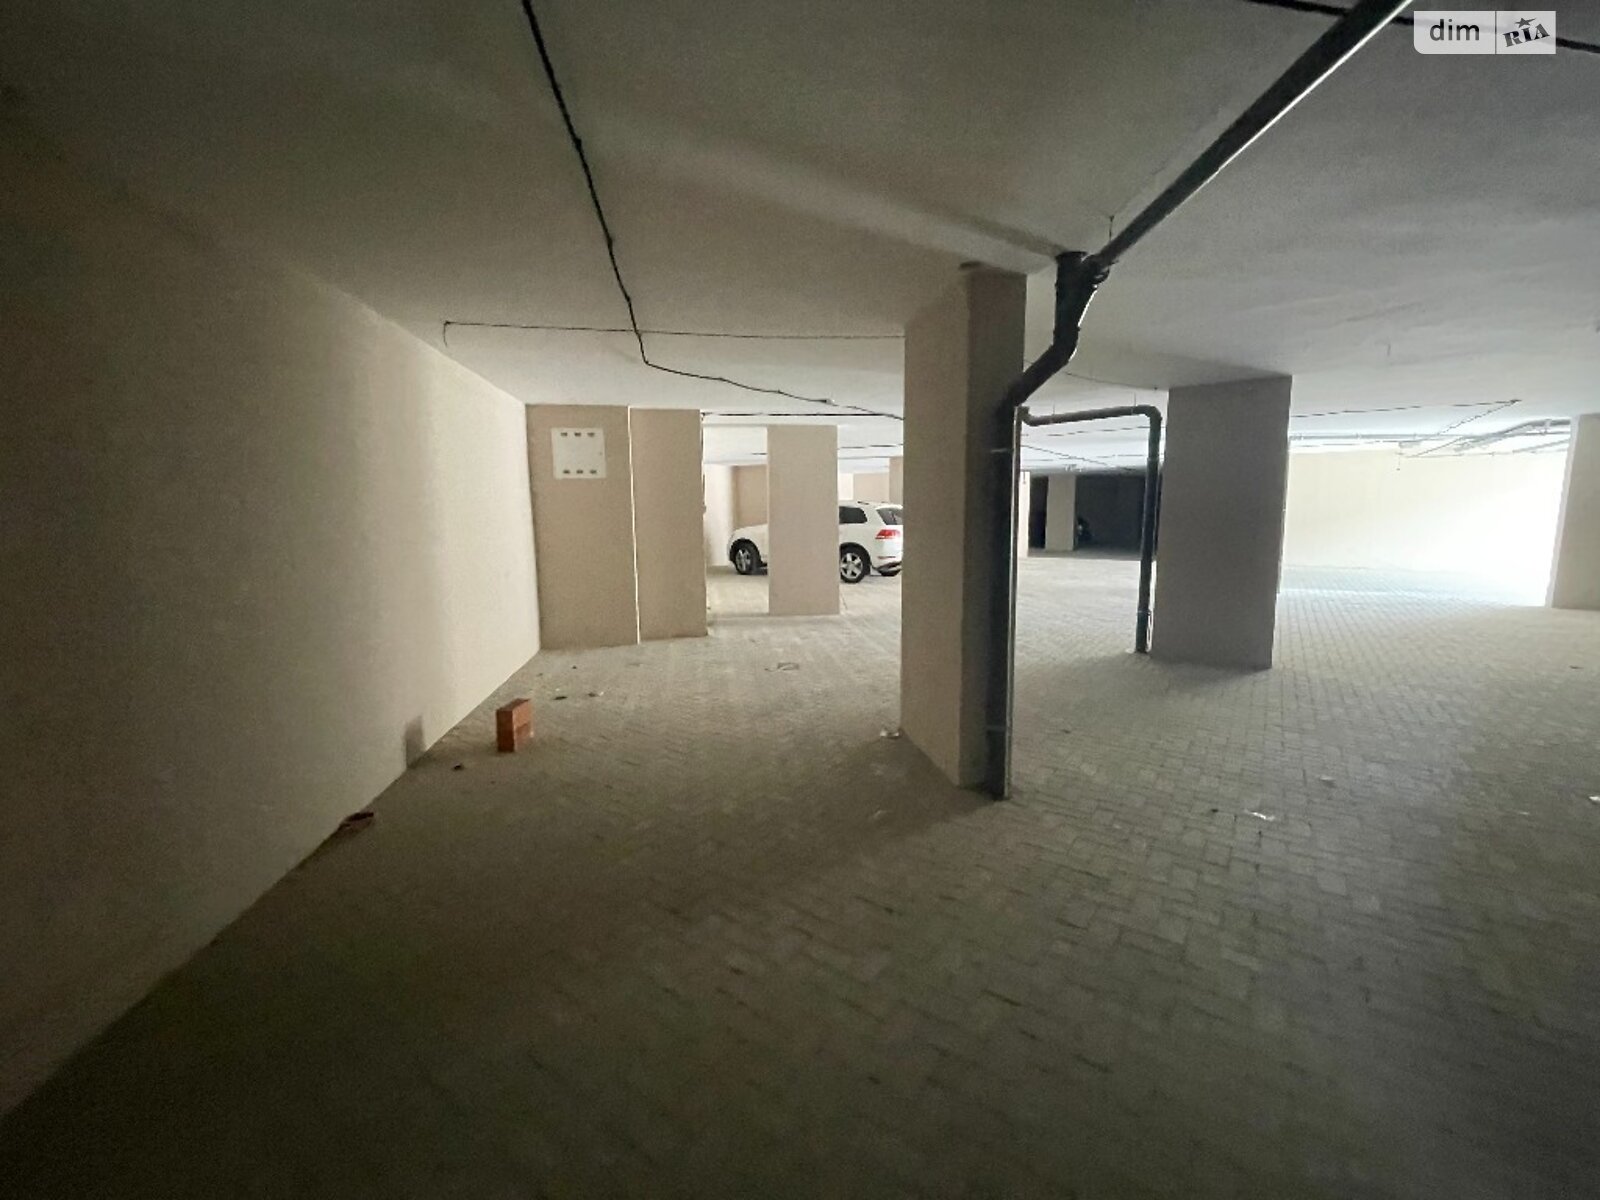 Місце в підземному паркінгу під легкове авто в Одесі, площа 38.71 кв.м. фото 1